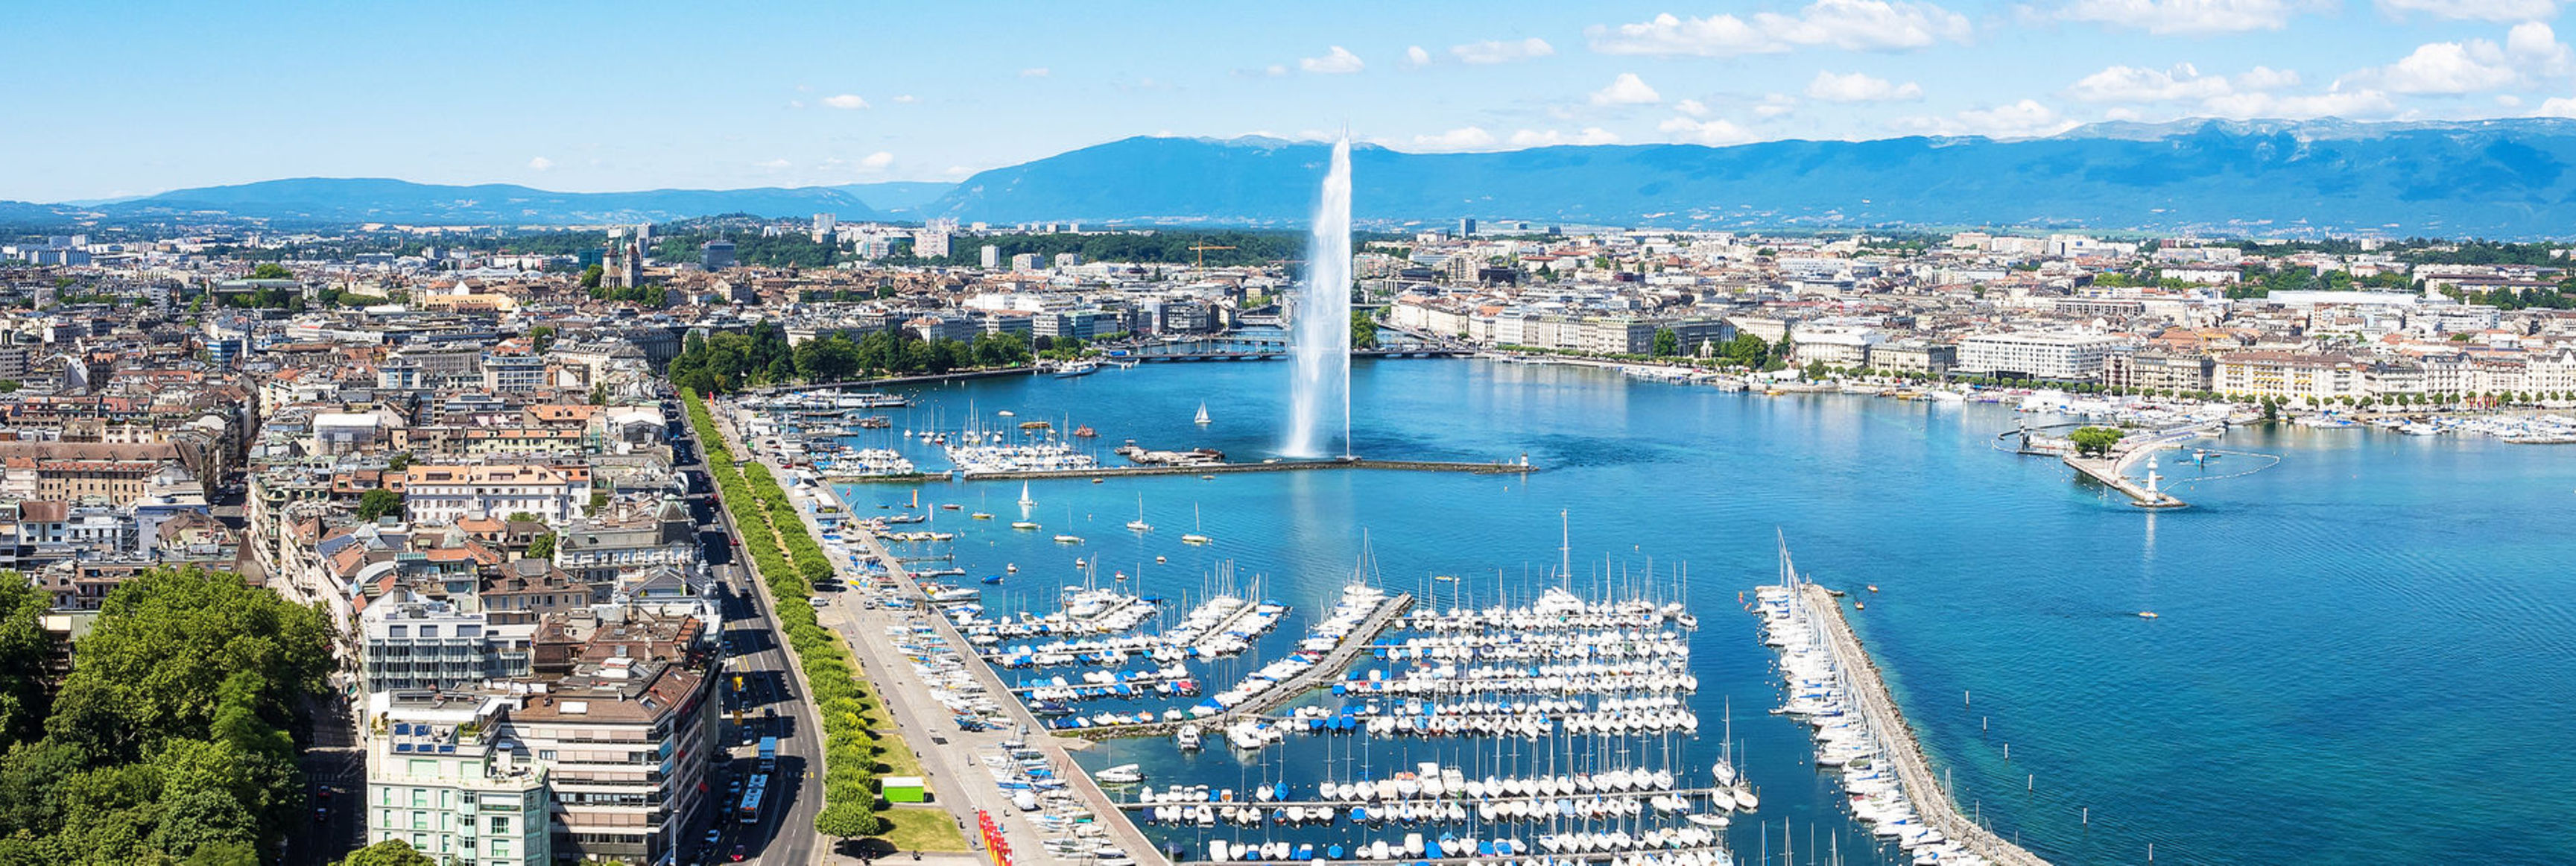 Geneva city